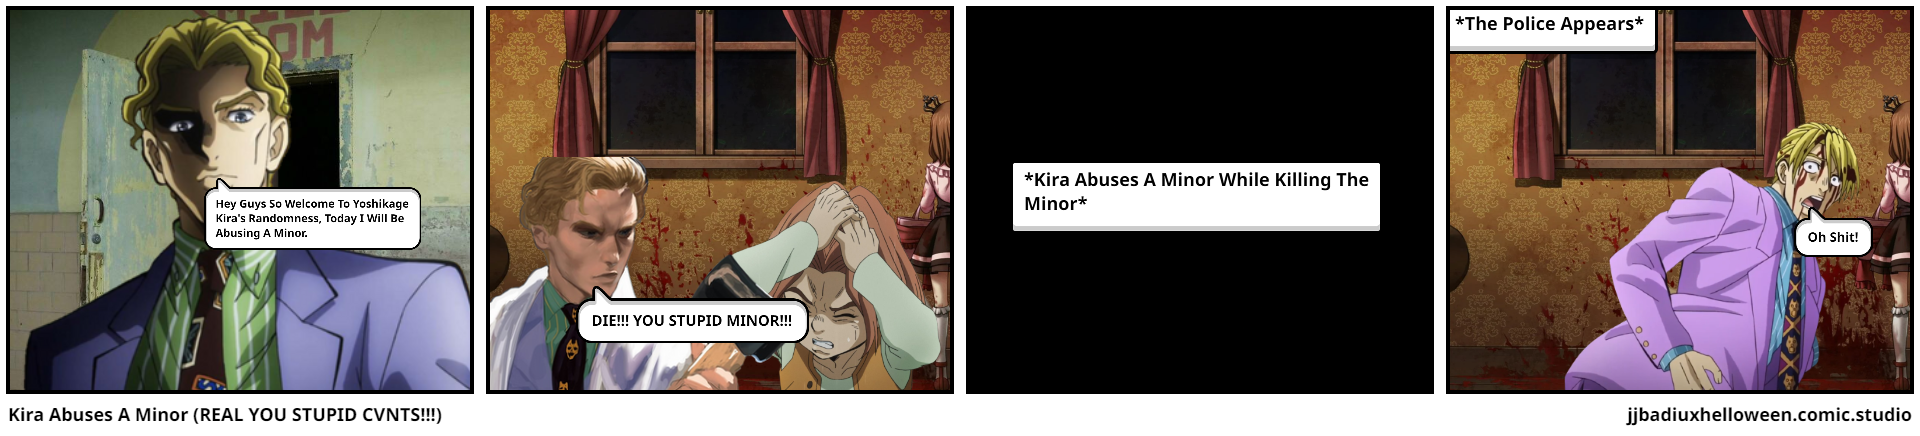 Kira Abuses A Minor (REAL YOU STUPID CVNTS!!!)